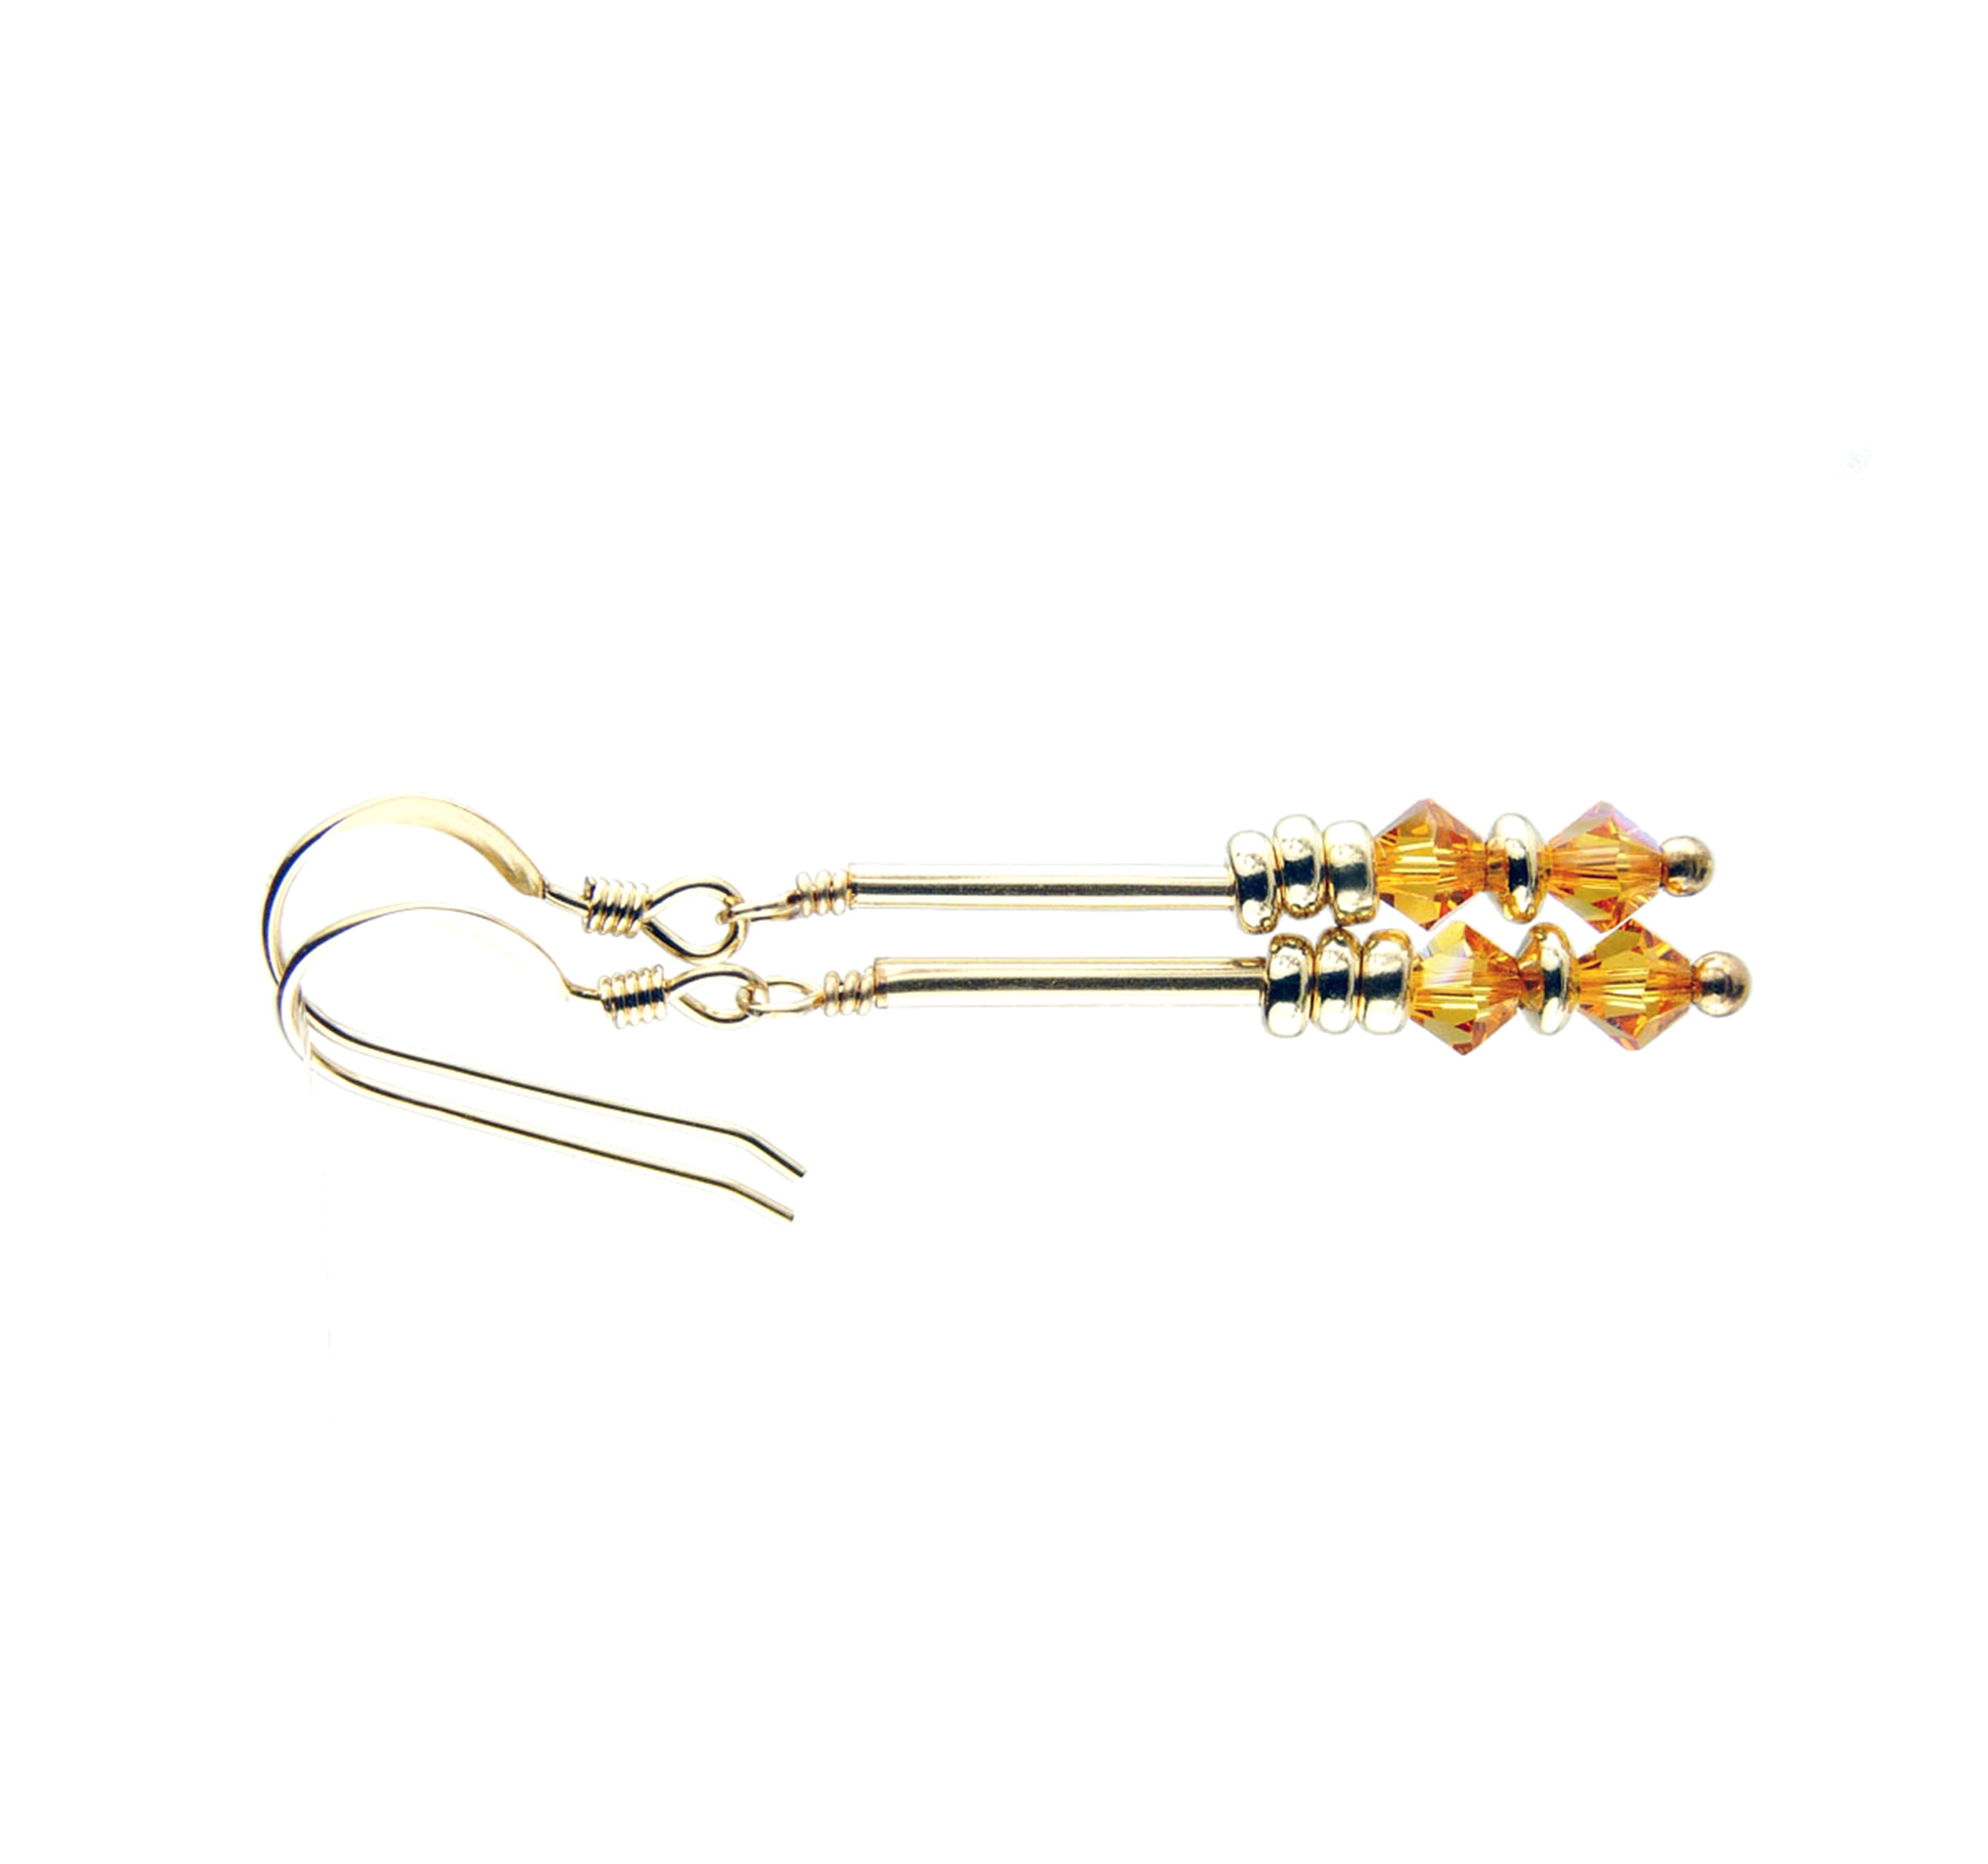 Topaz Earrings, November Birthstone Earrings, Yellow Minimalist 14K GF Dangle Earrings, Crystal Jewelry Elements